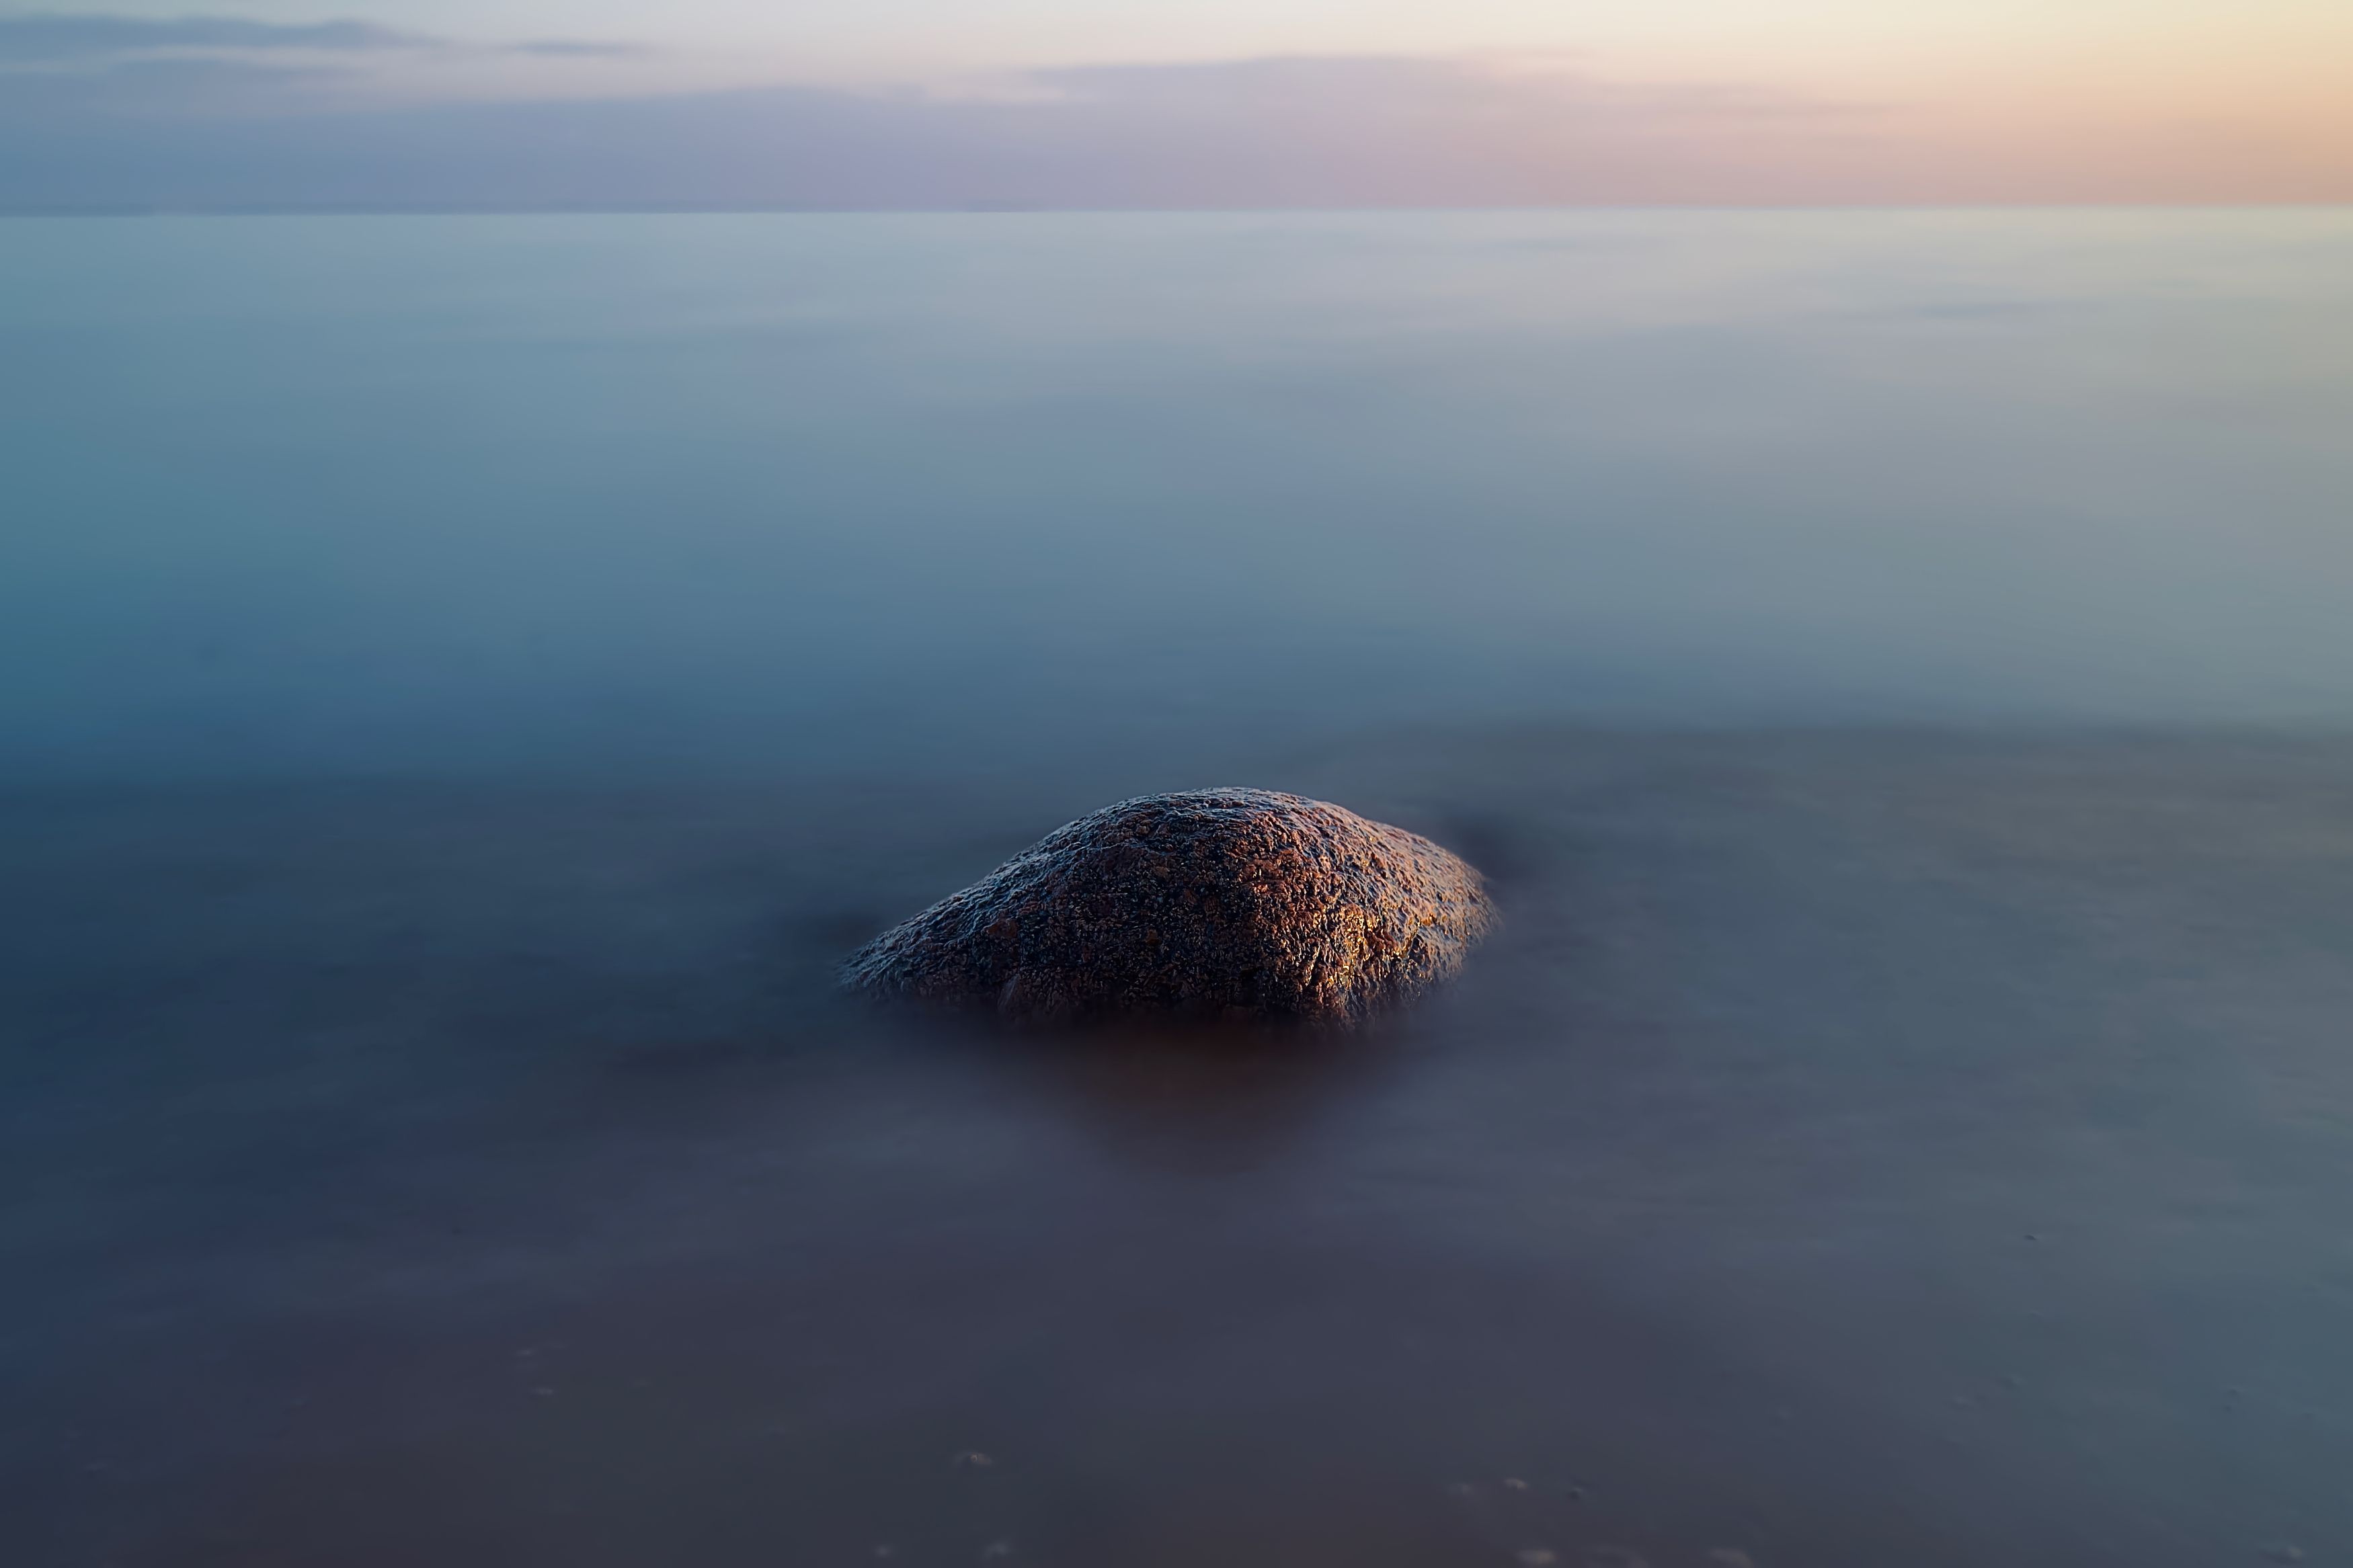 море, камень, закат, вода, выдержка, минимализм, Колобаев Глеб